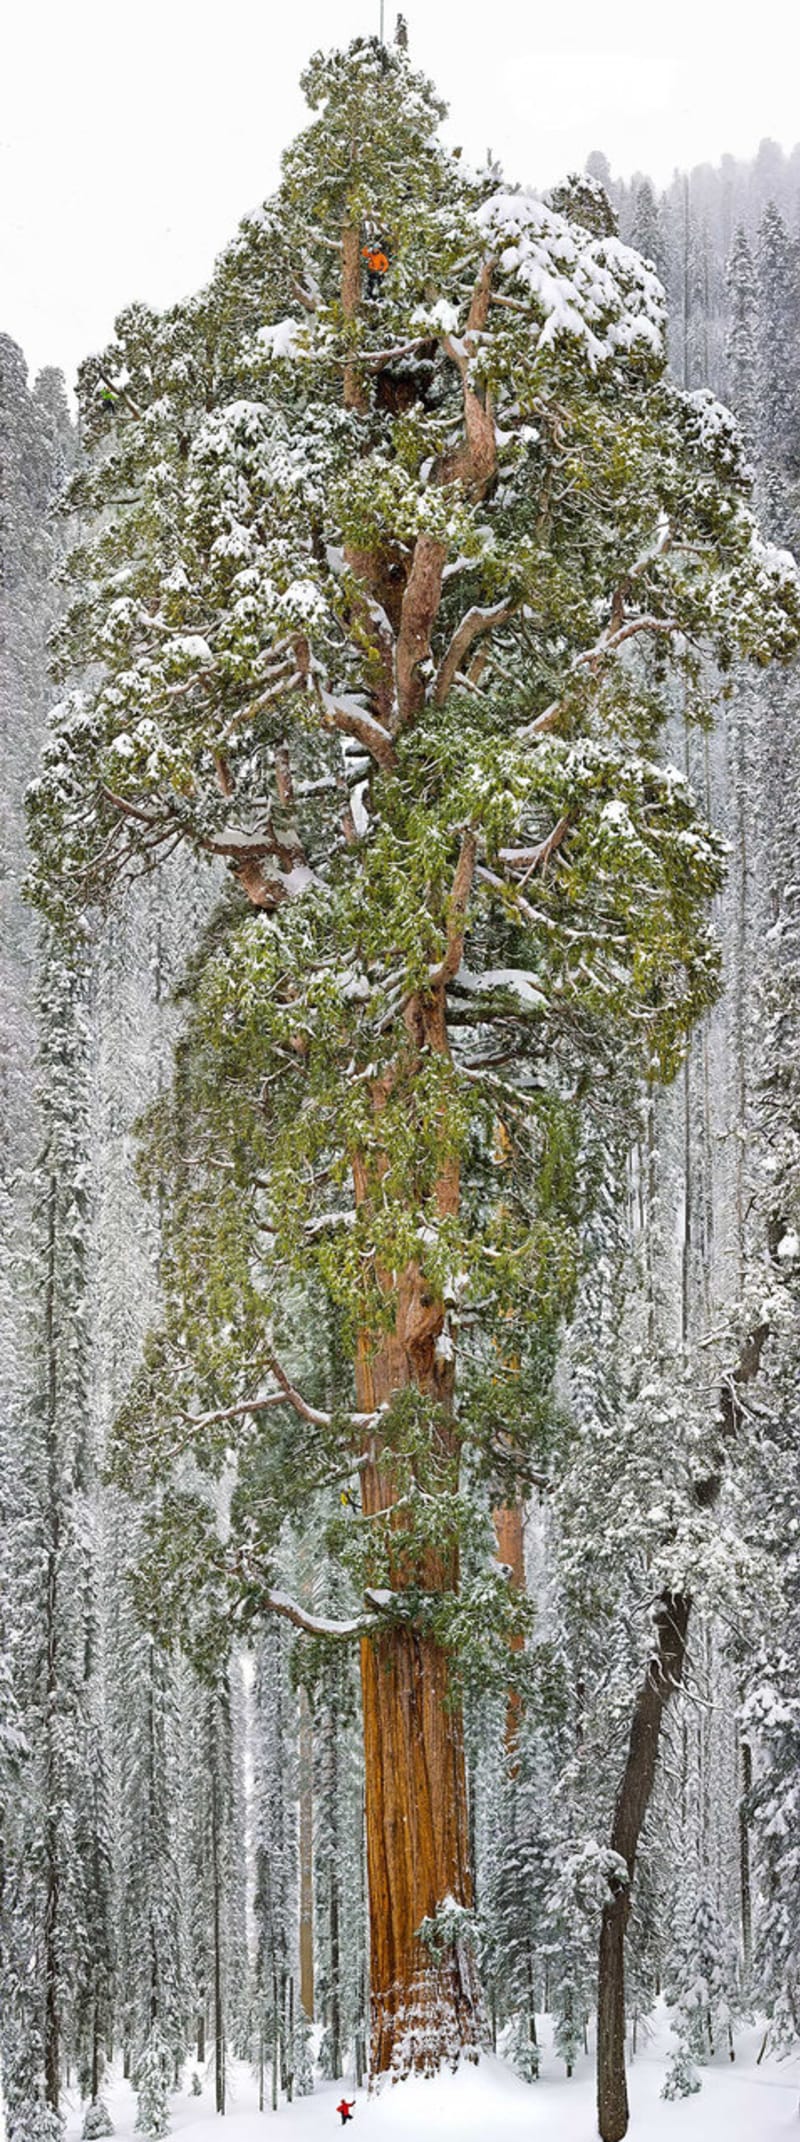 Velikán, který se nachází v národním parku Sequoia v Kalifornii je 241 stop (73 metrů) vysoký a má u země obvod 93 stop (28 metrů). Jedná se o třetí největší sekvojovec obrovský na světě